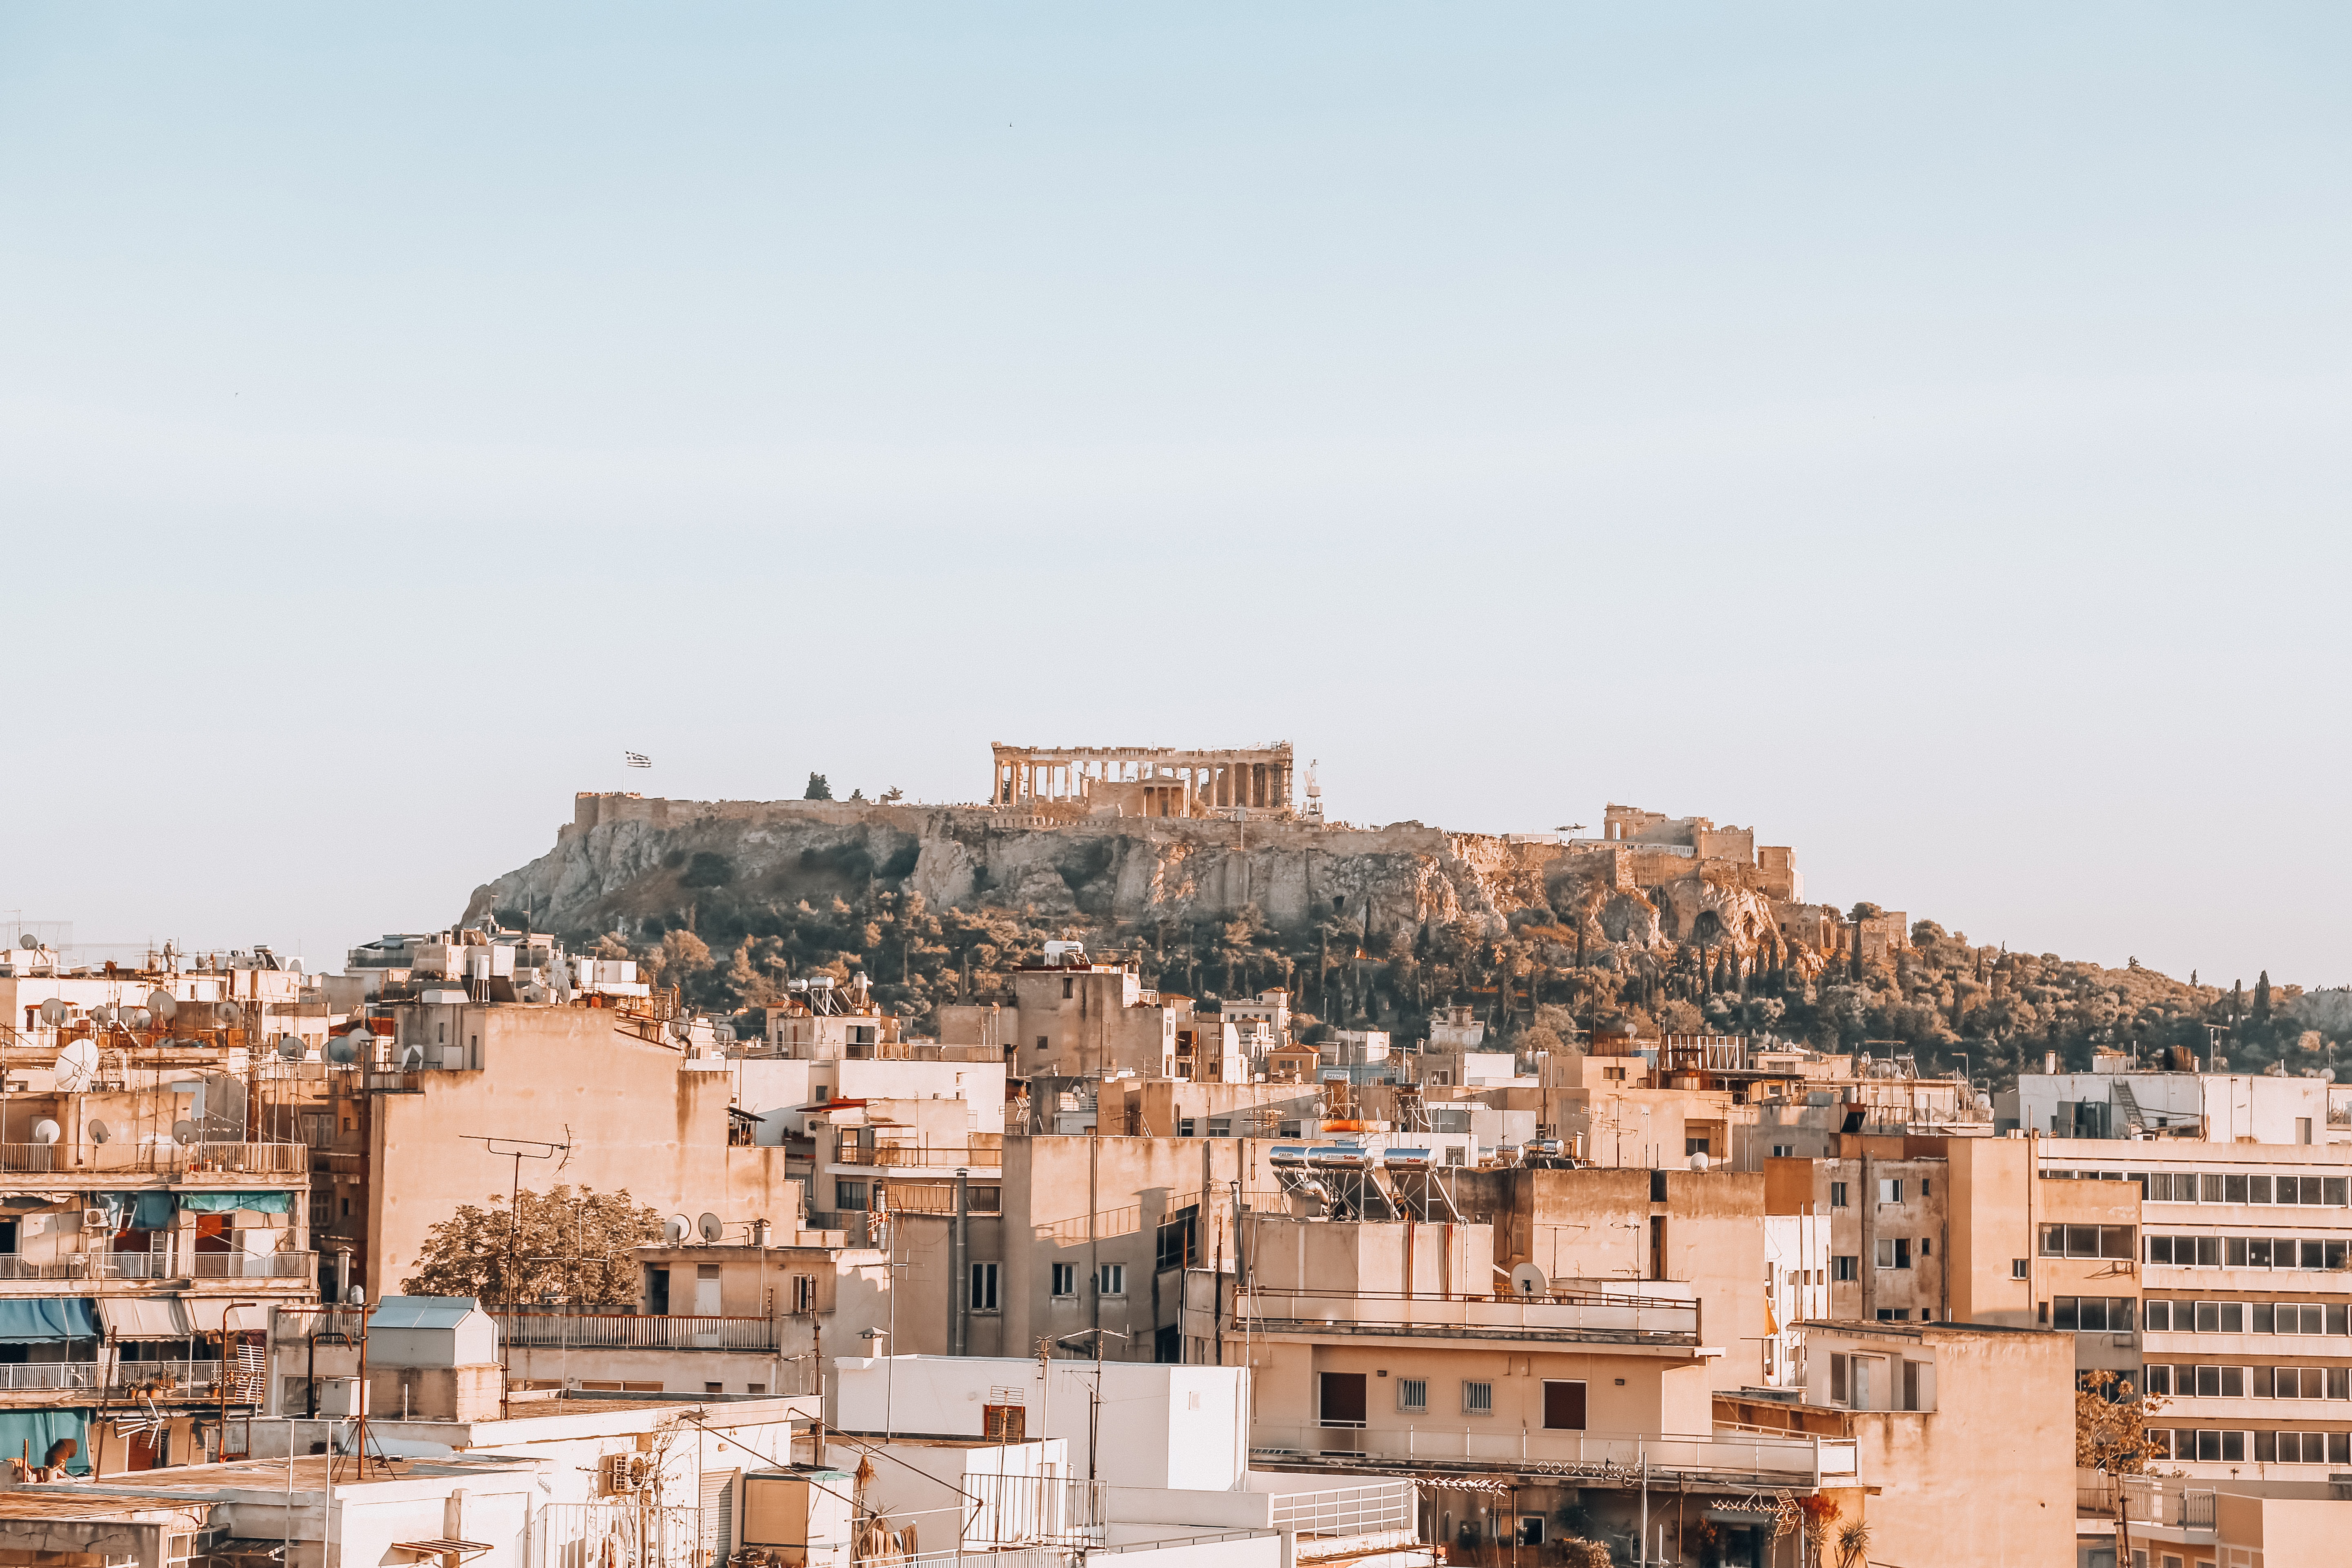 City of Athens, photo by Kylie Docherty on Unsplash.